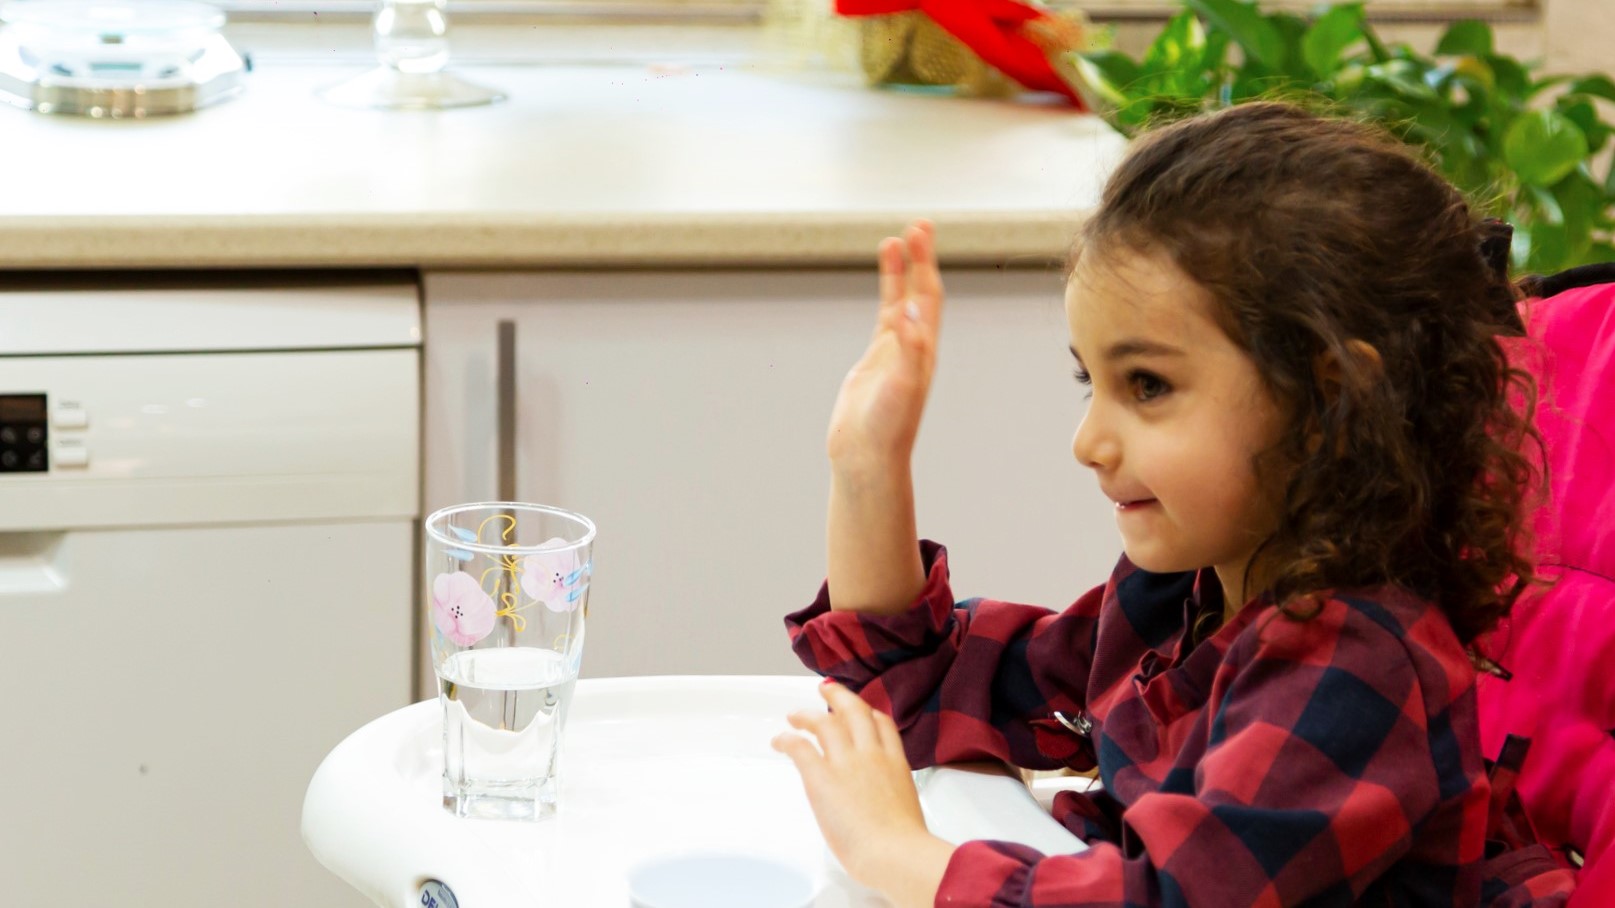 آموزش آداب غذا خوردن به کودک: دو تا چهار سالگی